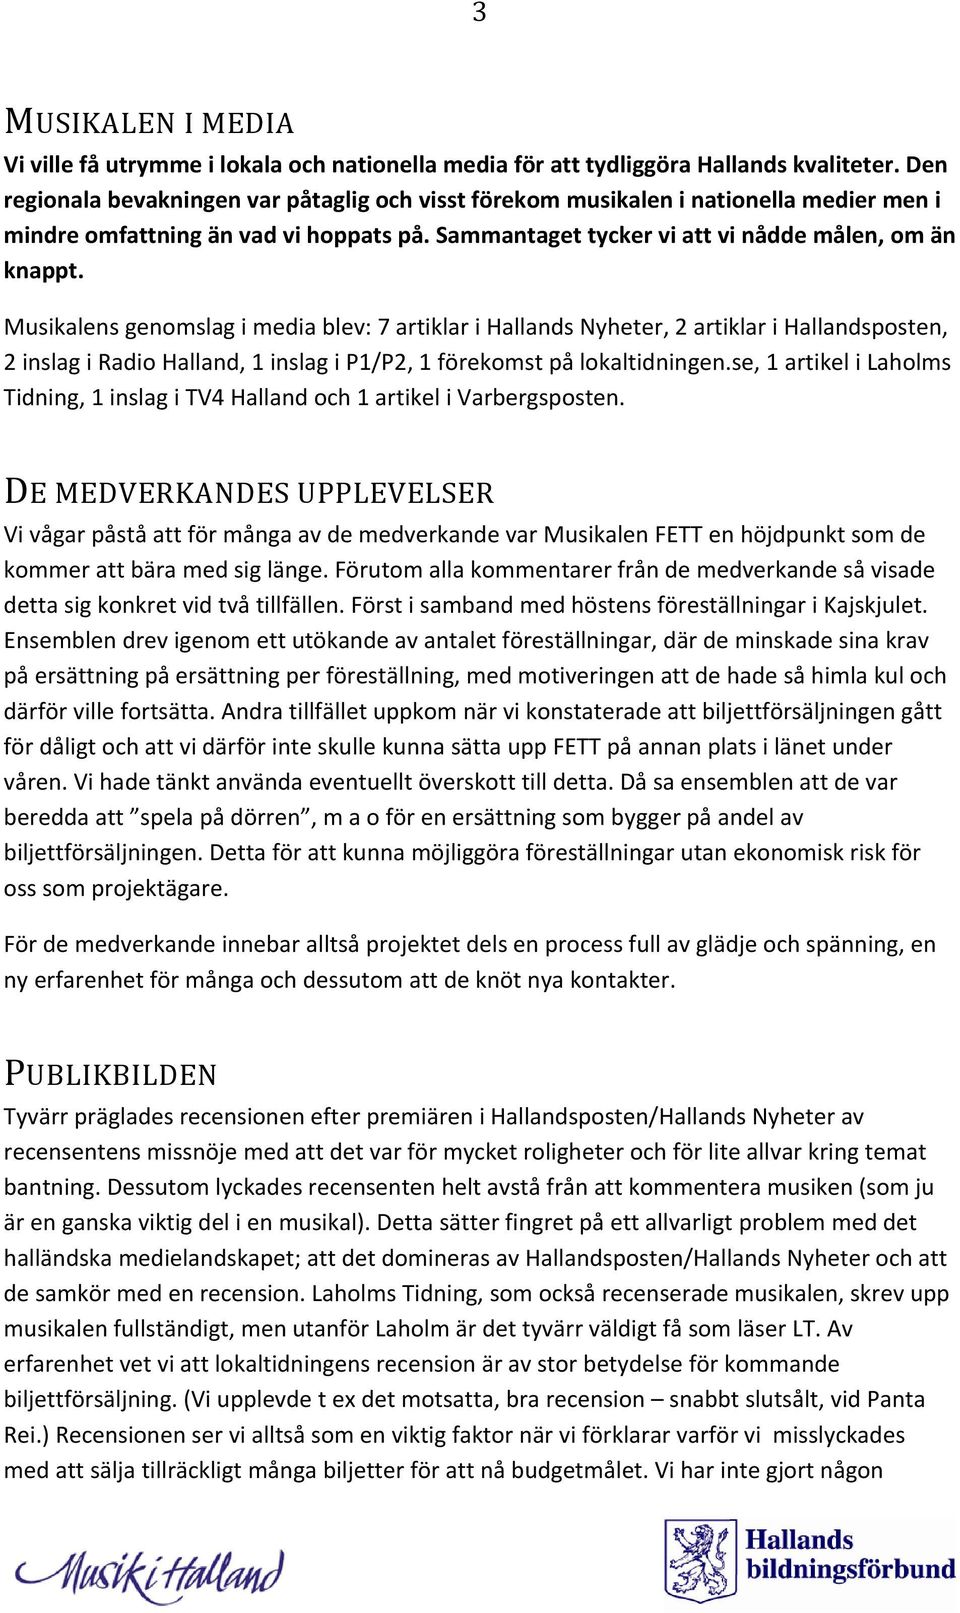 Musikalens genomslag i media blev: 7 artiklar i Hallands Nyheter, 2 artiklar i Hallandsposten, 2 inslag i Radio Halland, 1 inslag i P1/P2, 1 förekomst på lokaltidningen.